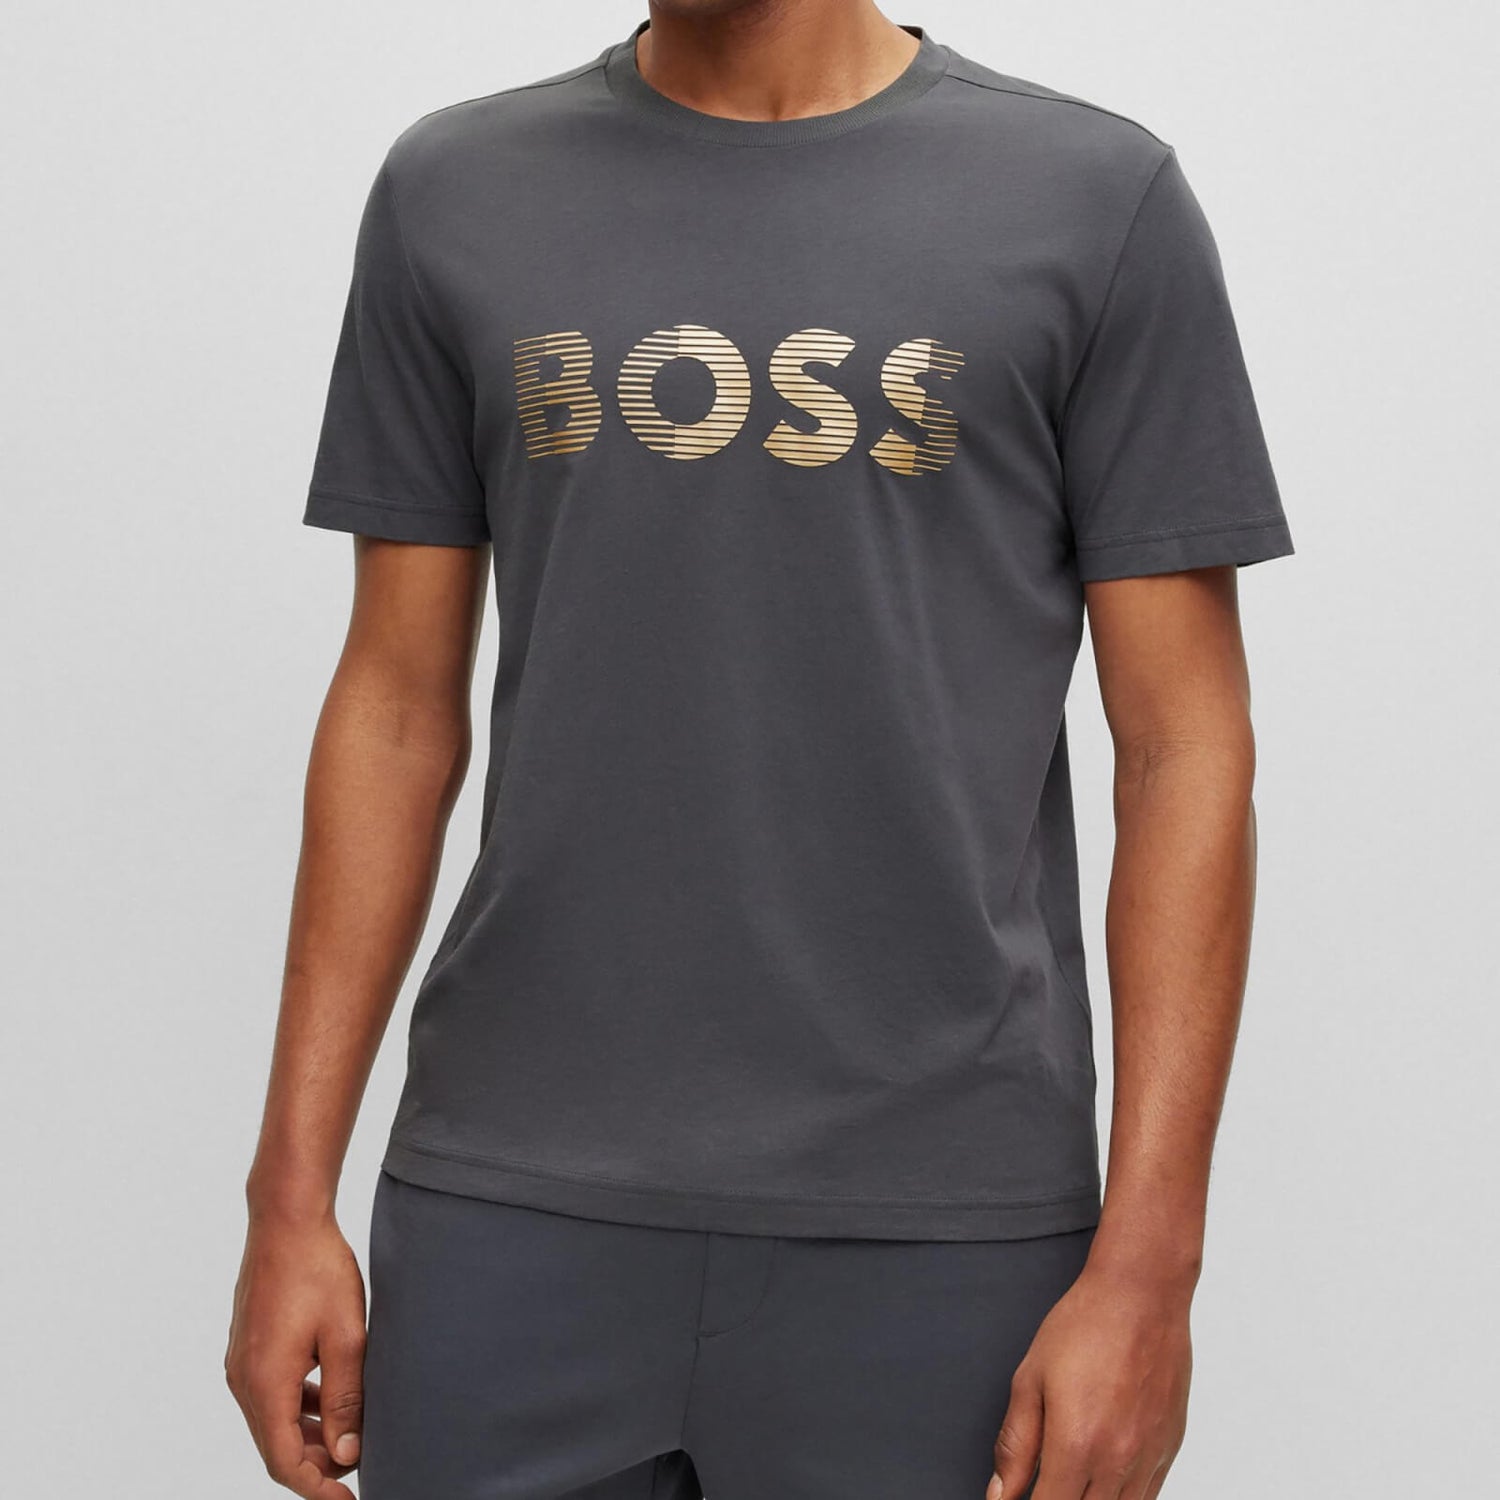 BOSS Green Tee 1 Logo Cotton T-Shirt - S